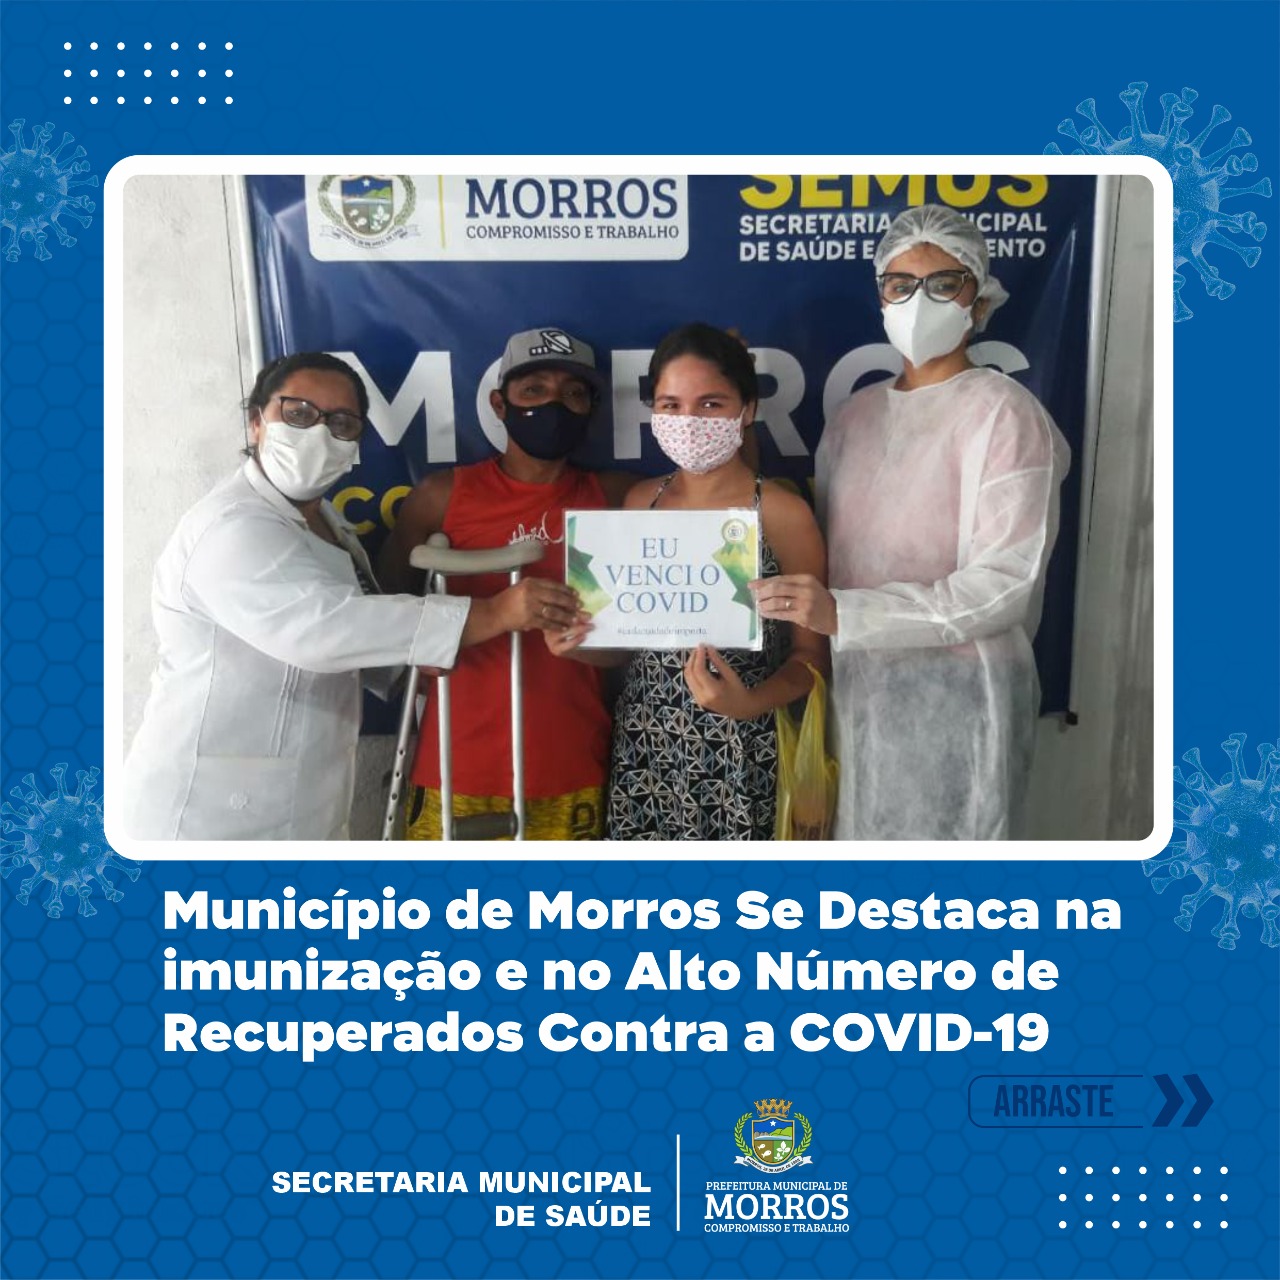 O município de Morros, (distante 100km da capital) tem feito um trabalho de destaque na imunização dos munícipes contra a COVID 19, além de aplicar 90% das doses recebidas, o número de recuperados possui uma taxa elevada entre aqueles que foram afetados pelo Coronavírus.